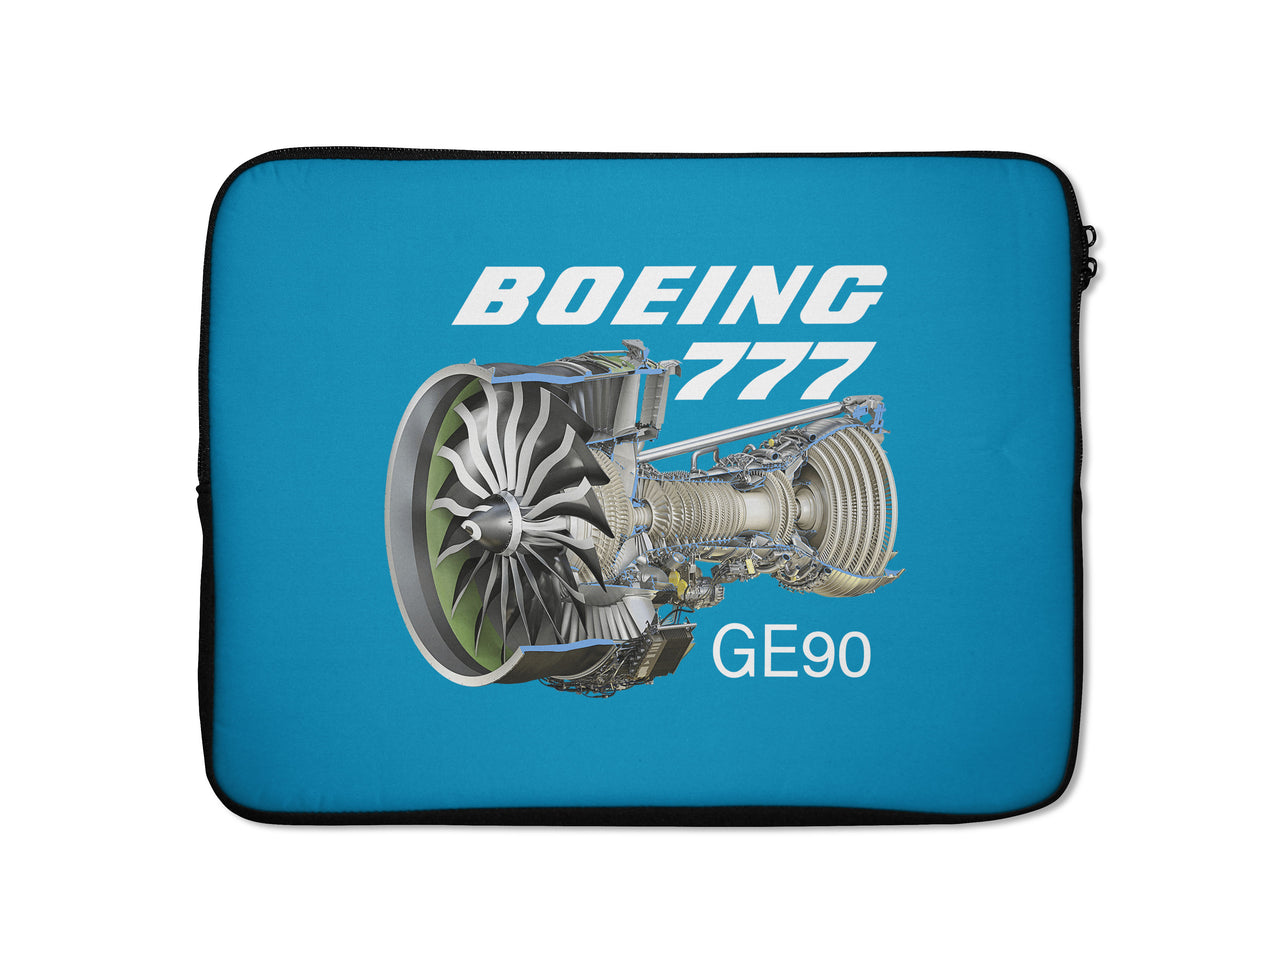 Boeing 777 & GE90 Engine Designed Laptop & Tablet Cases